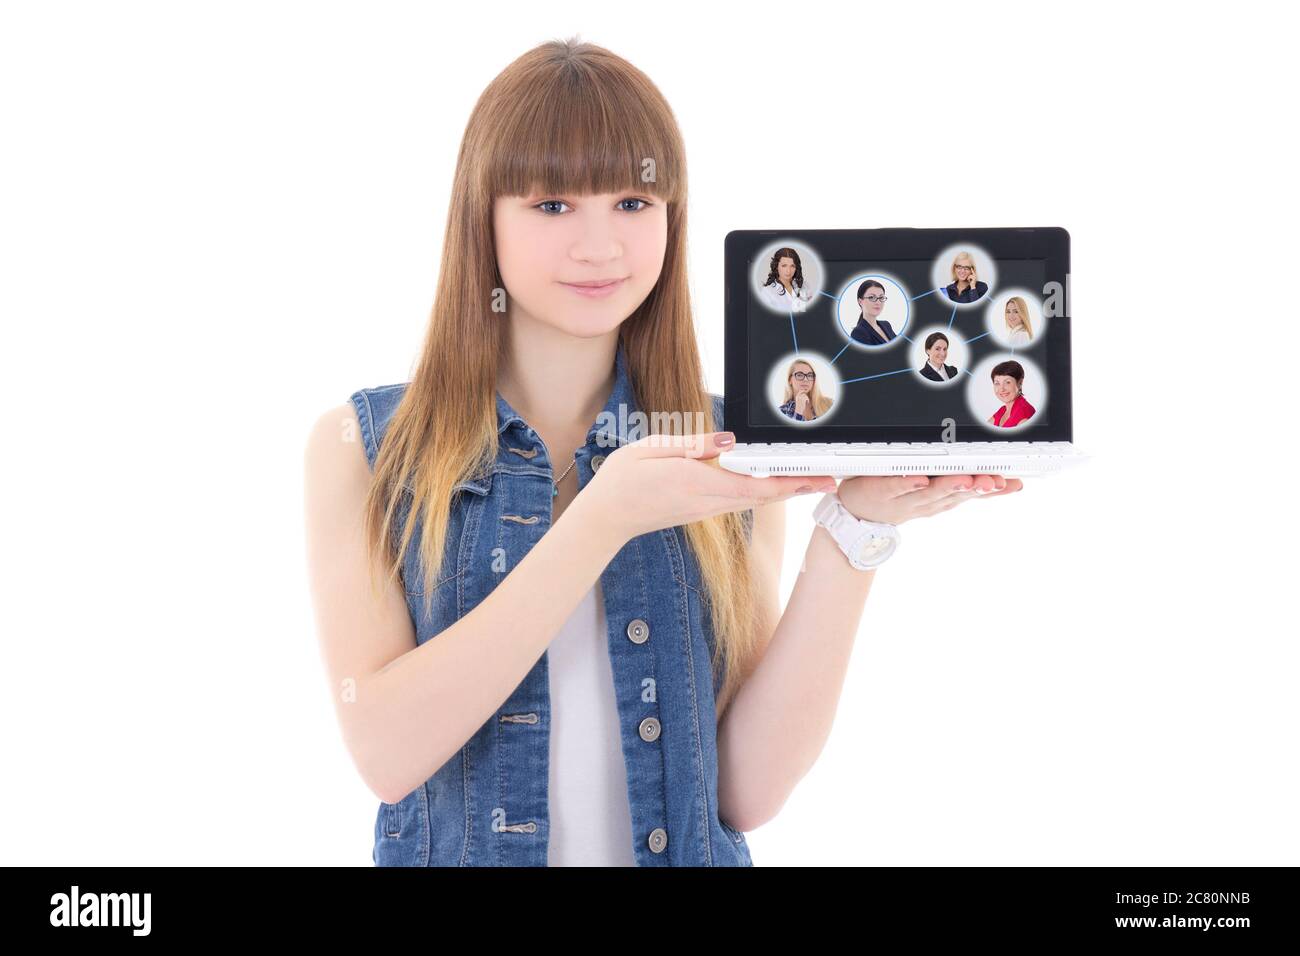 concept de réseau social - adorable adolescente tenant un ordinateur portable avec des portraits de personnes isolés sur fond blanc Banque D'Images